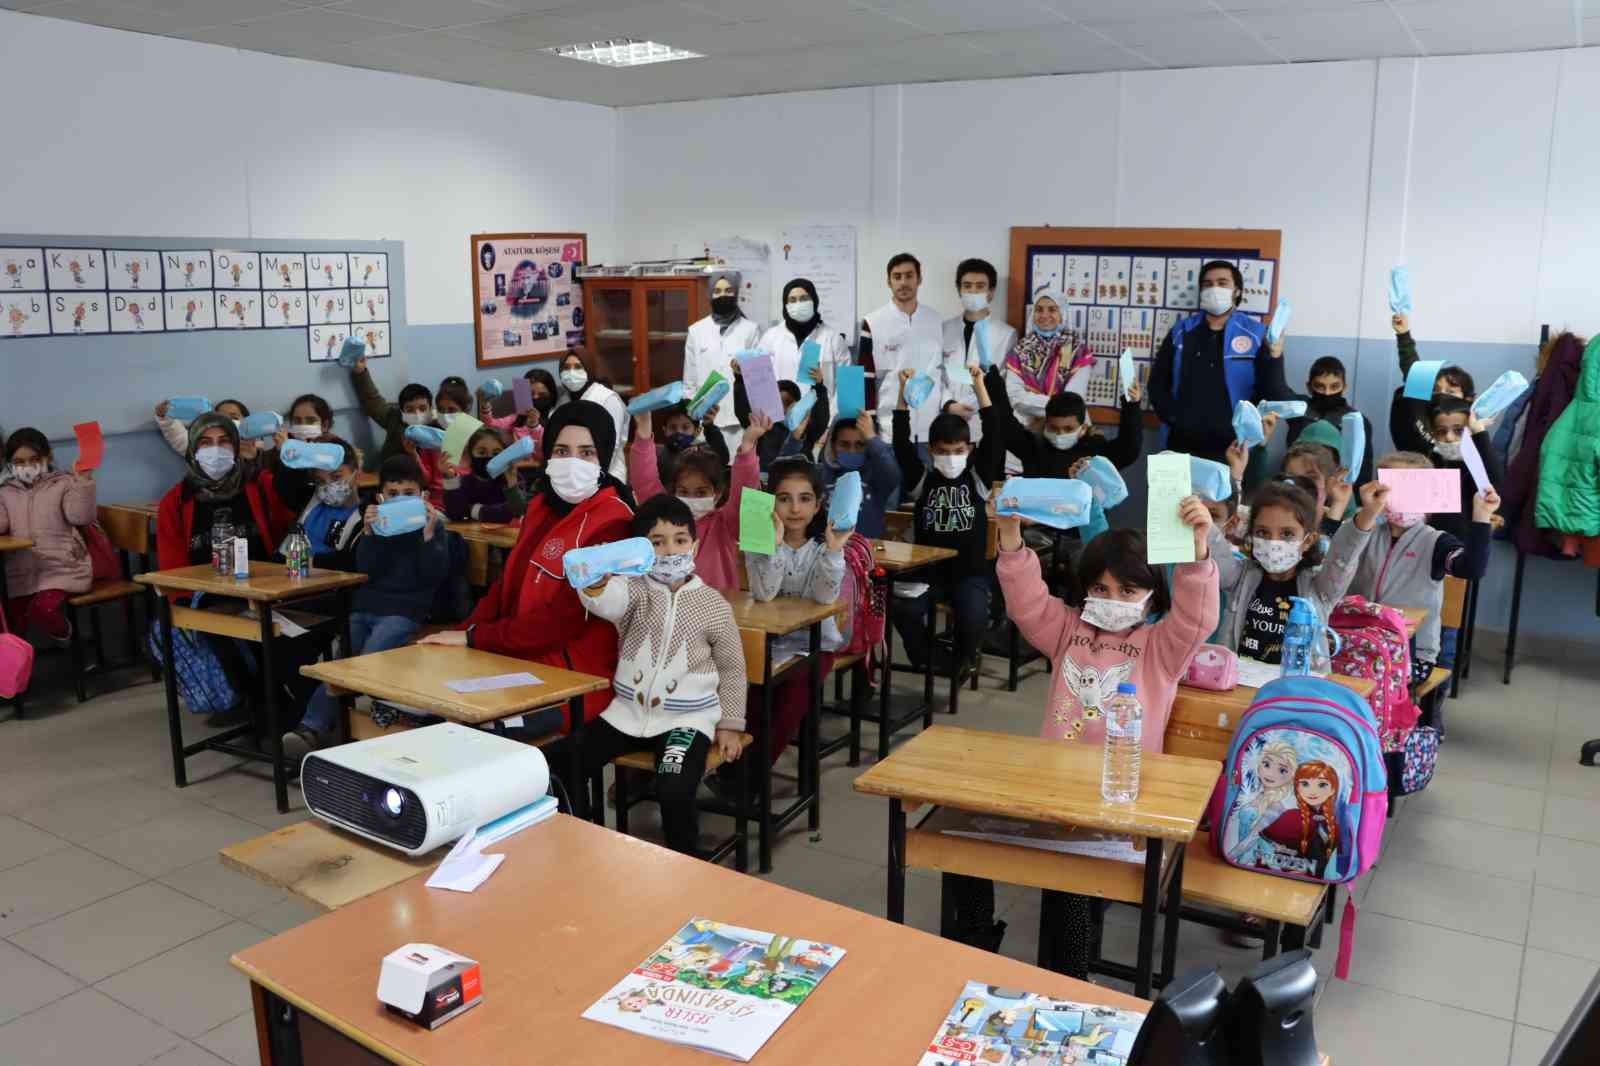 Tıp Fakültesi öğrencilerinden köy okulunda anlamlı etkinlik #erzincan